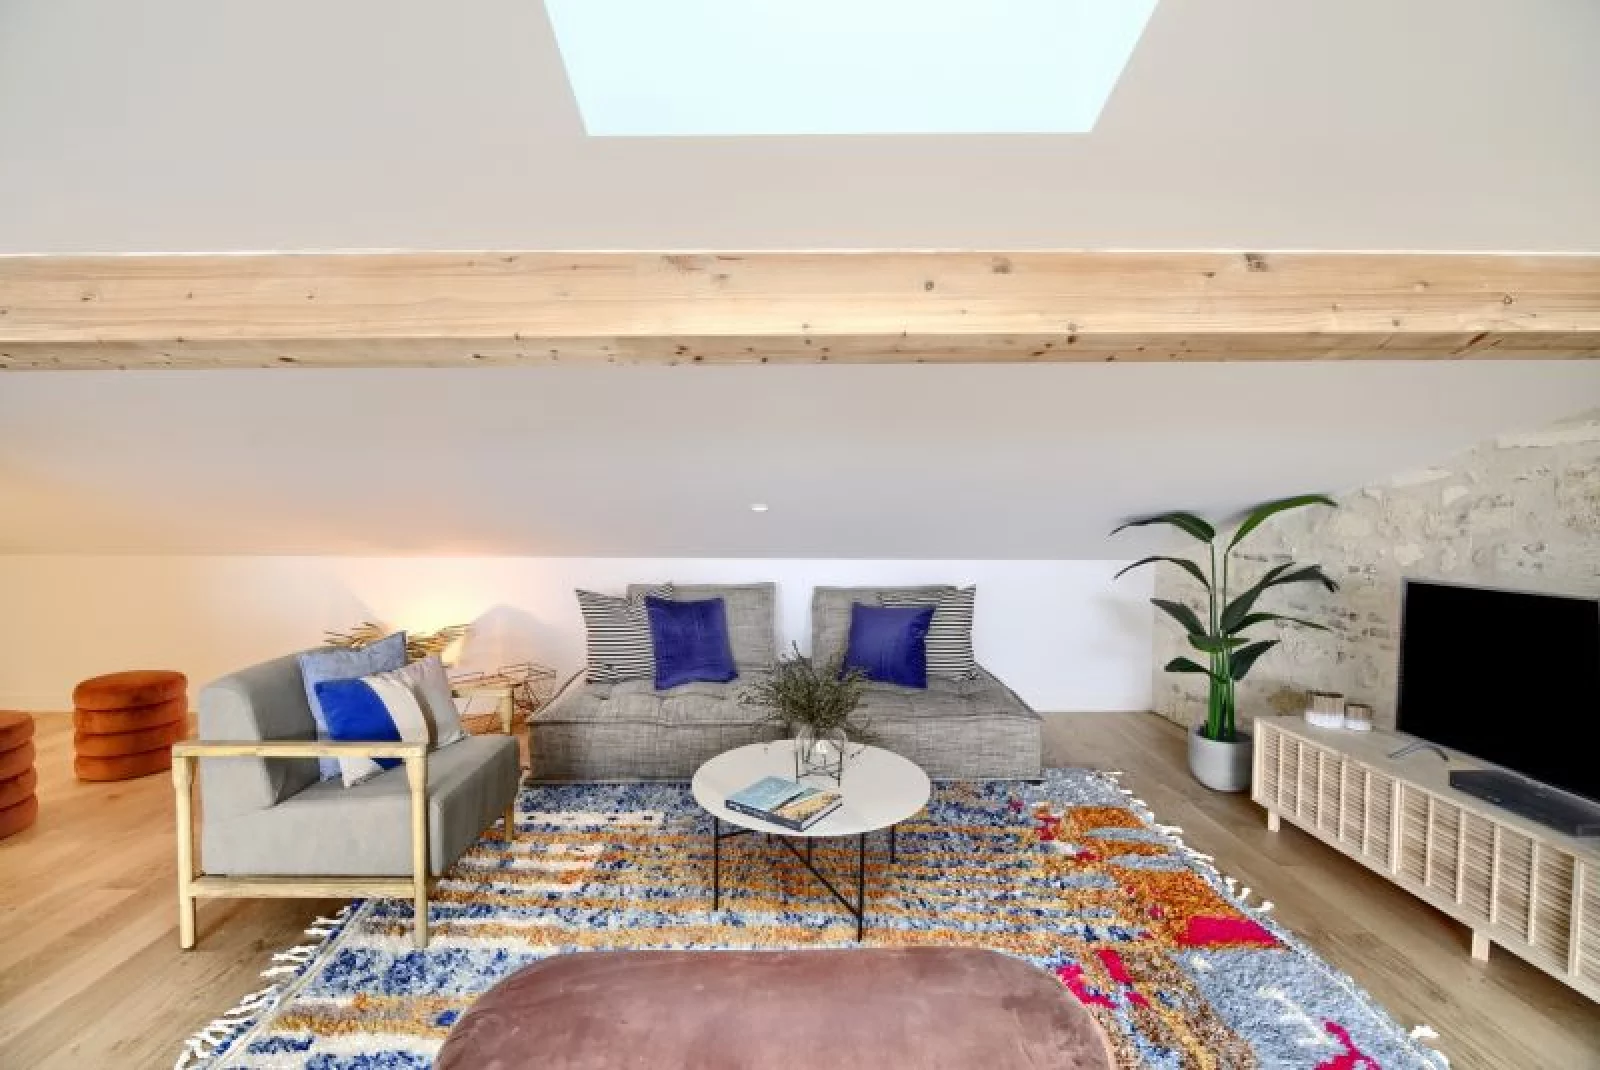 Location appartement duplex meublé 4 pièces de 83m² (Bordeaux - Chartrons)